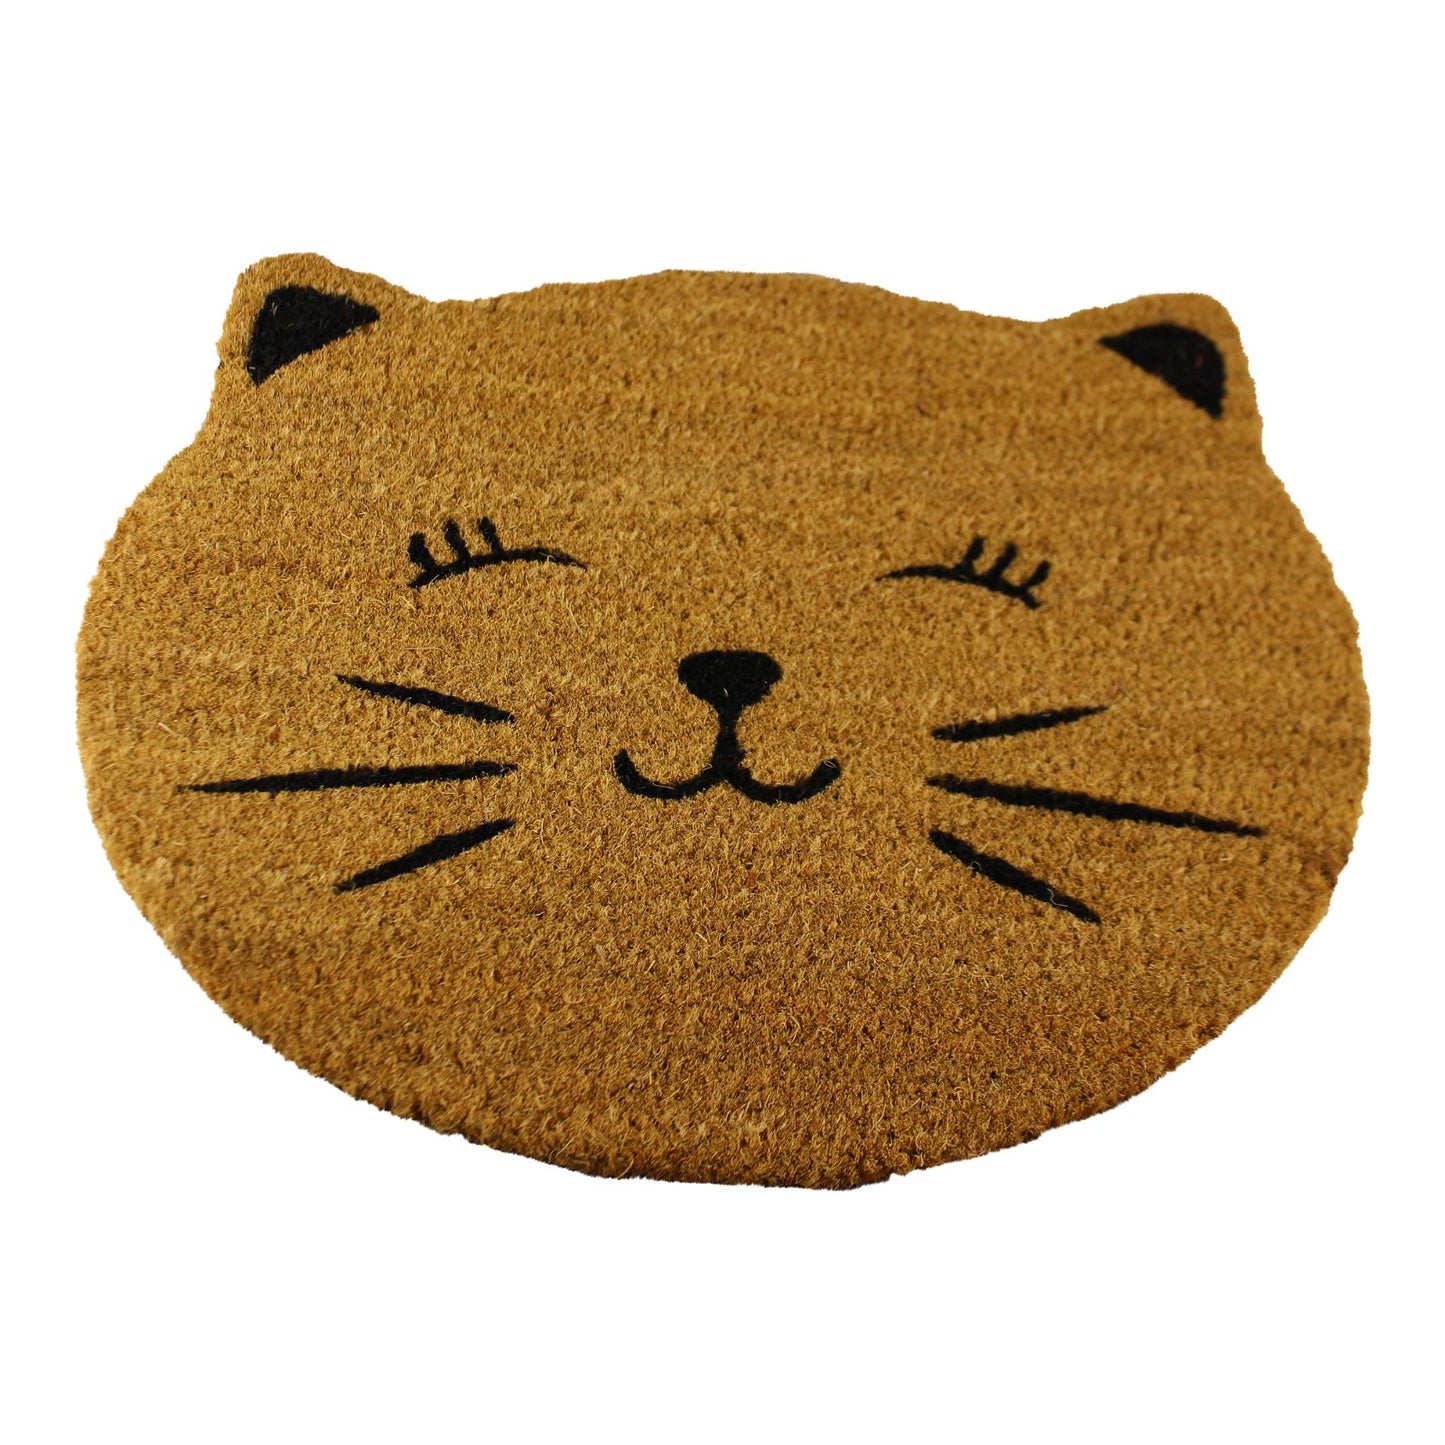 Coir Doormat, Cat Design